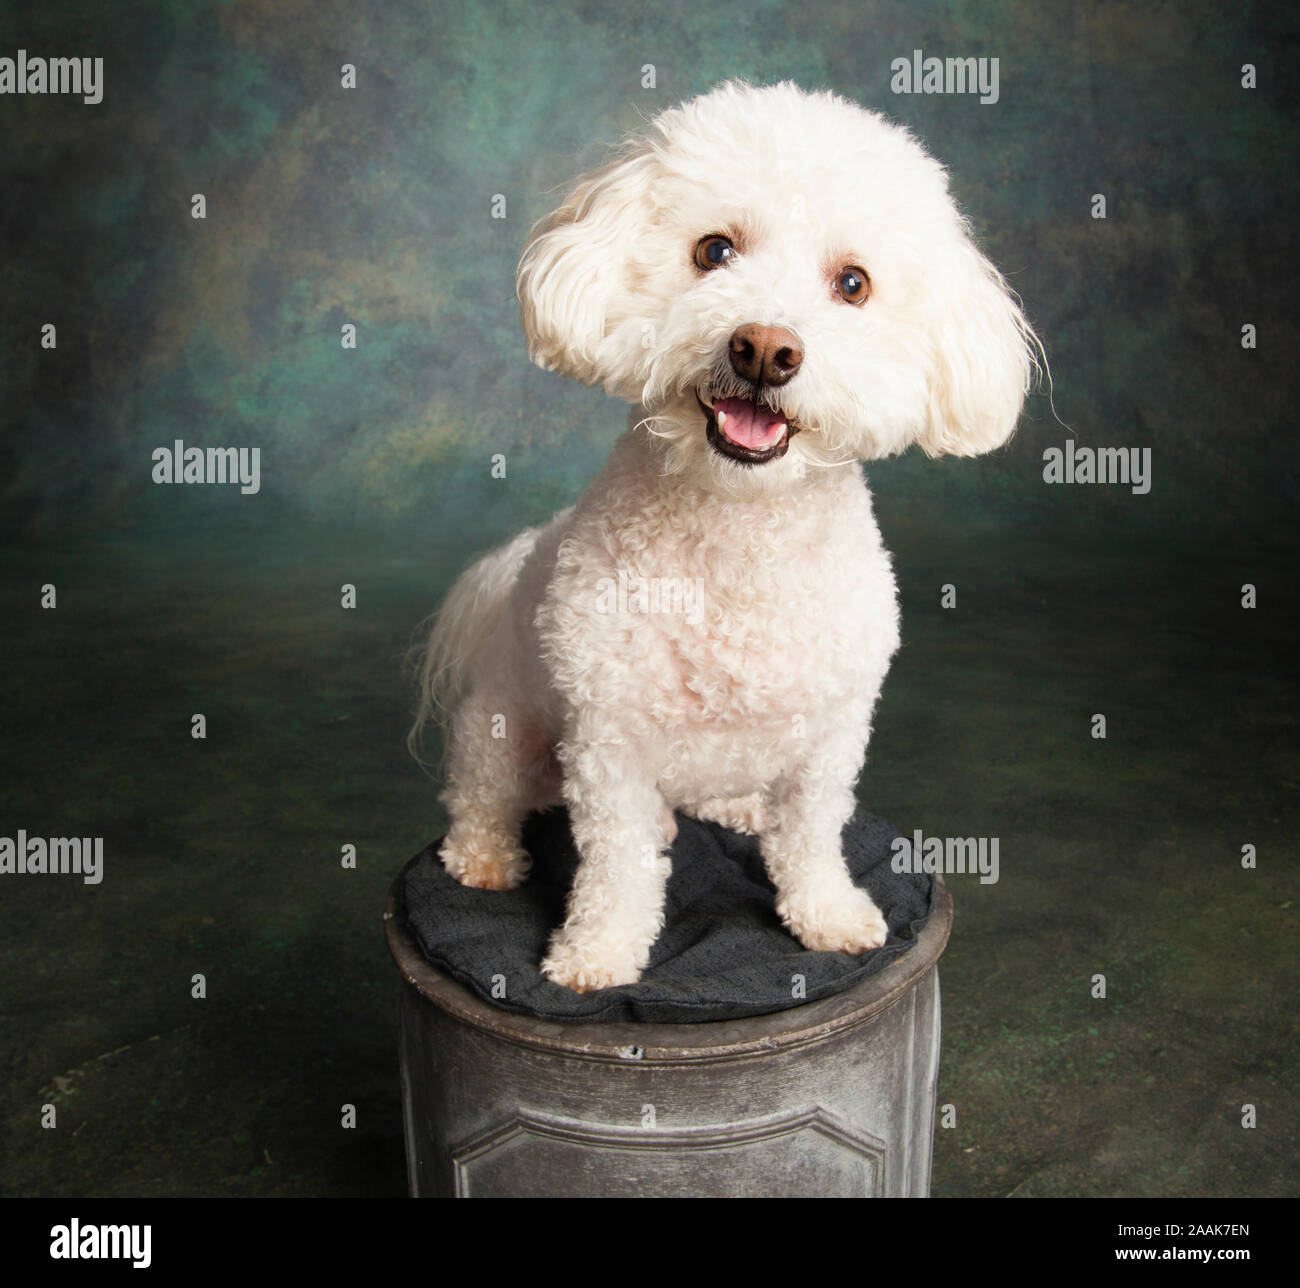 Studio portrait of Bichon Frise Poodle mix dog Stock Photo